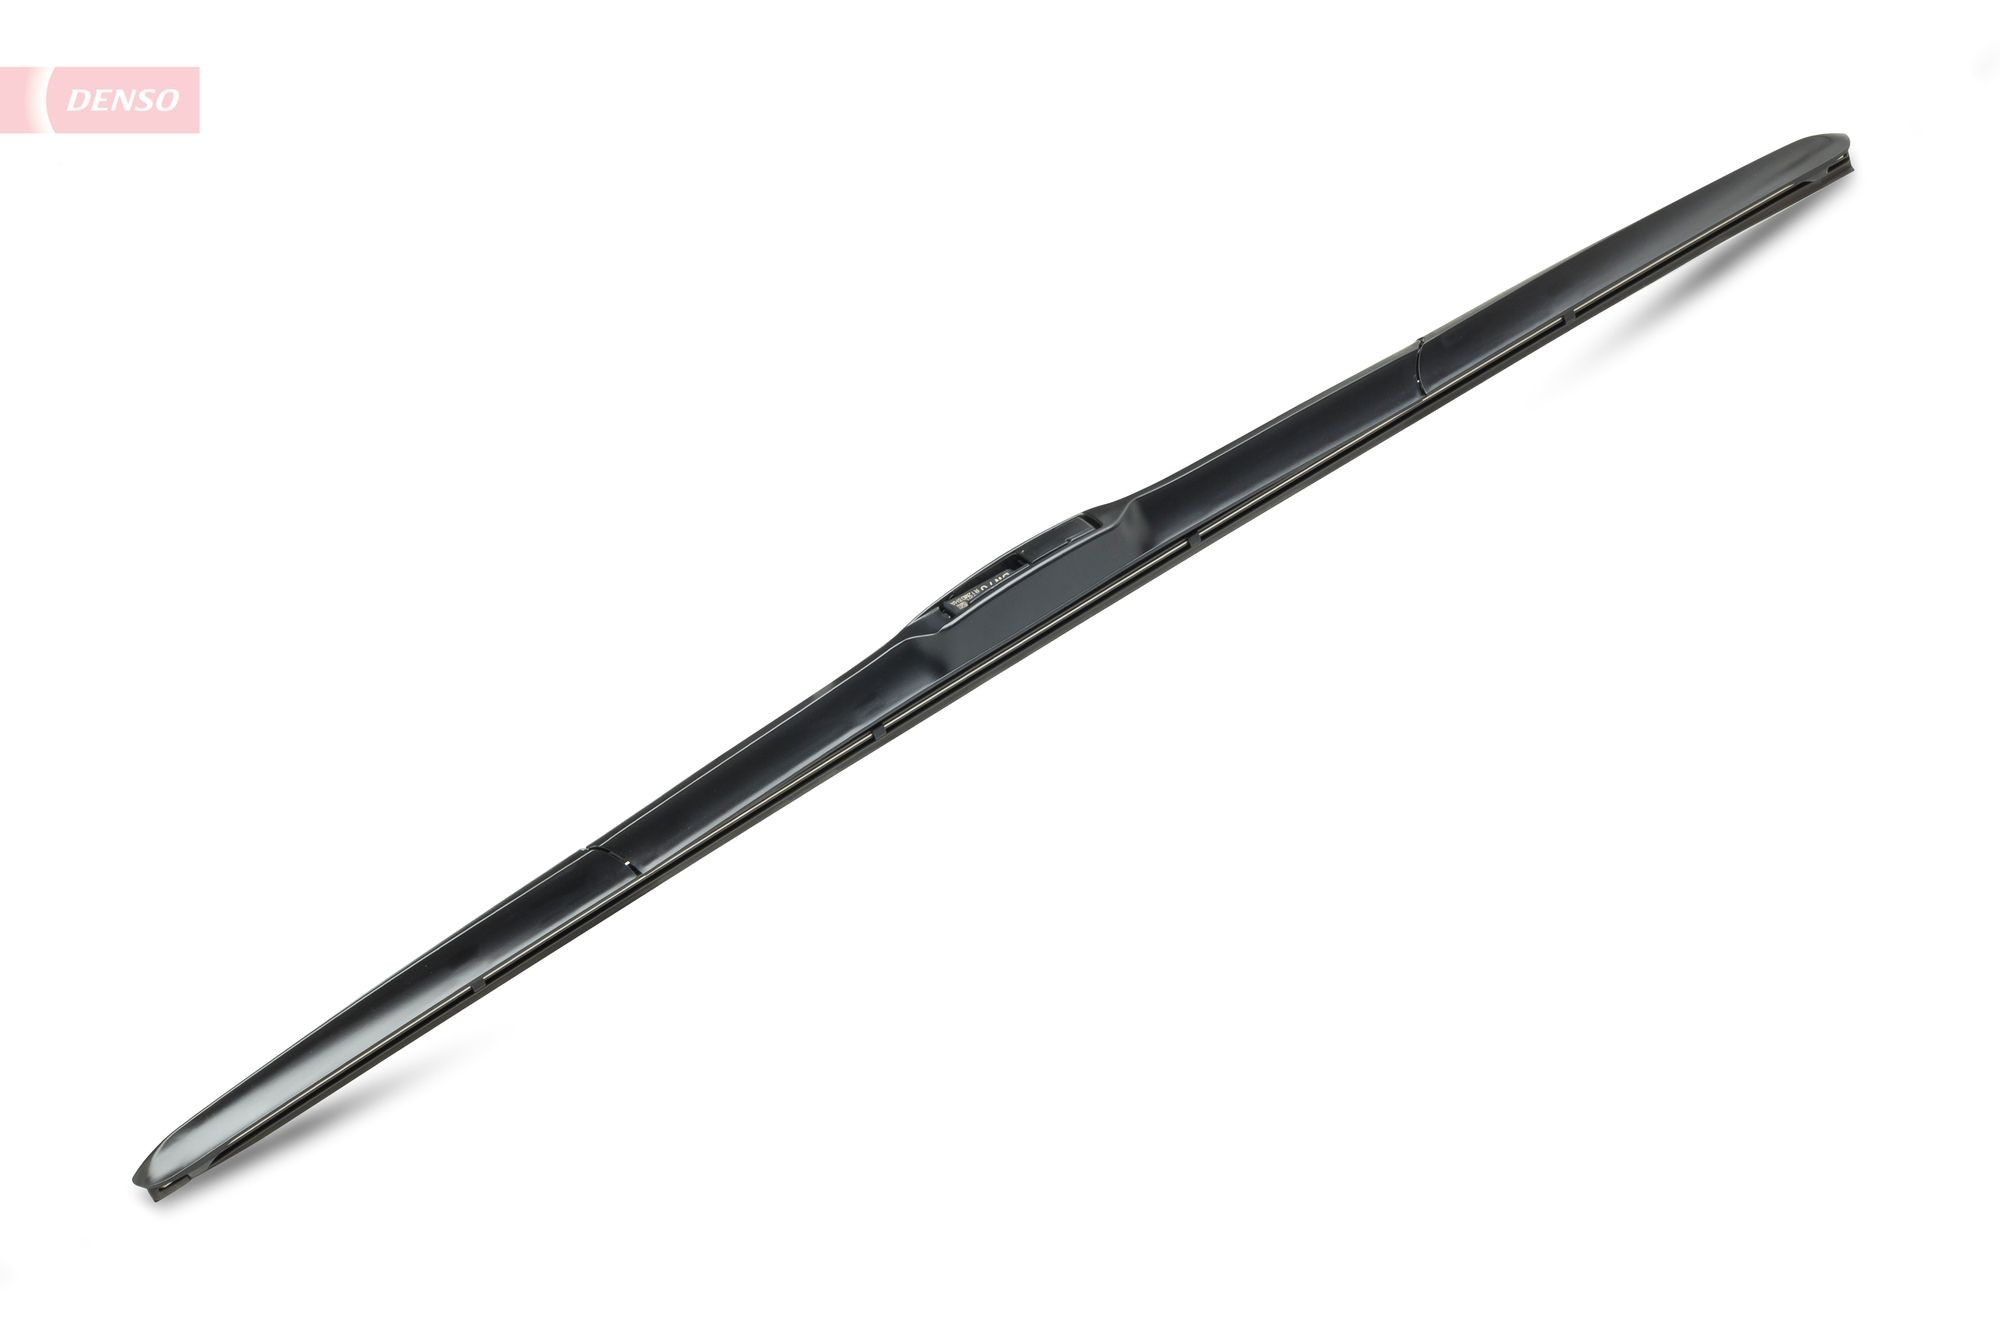 DENSO Hybrid DU-070R Wiper blade 700 mm, Hybrid Wiper Blade, 28 Inch